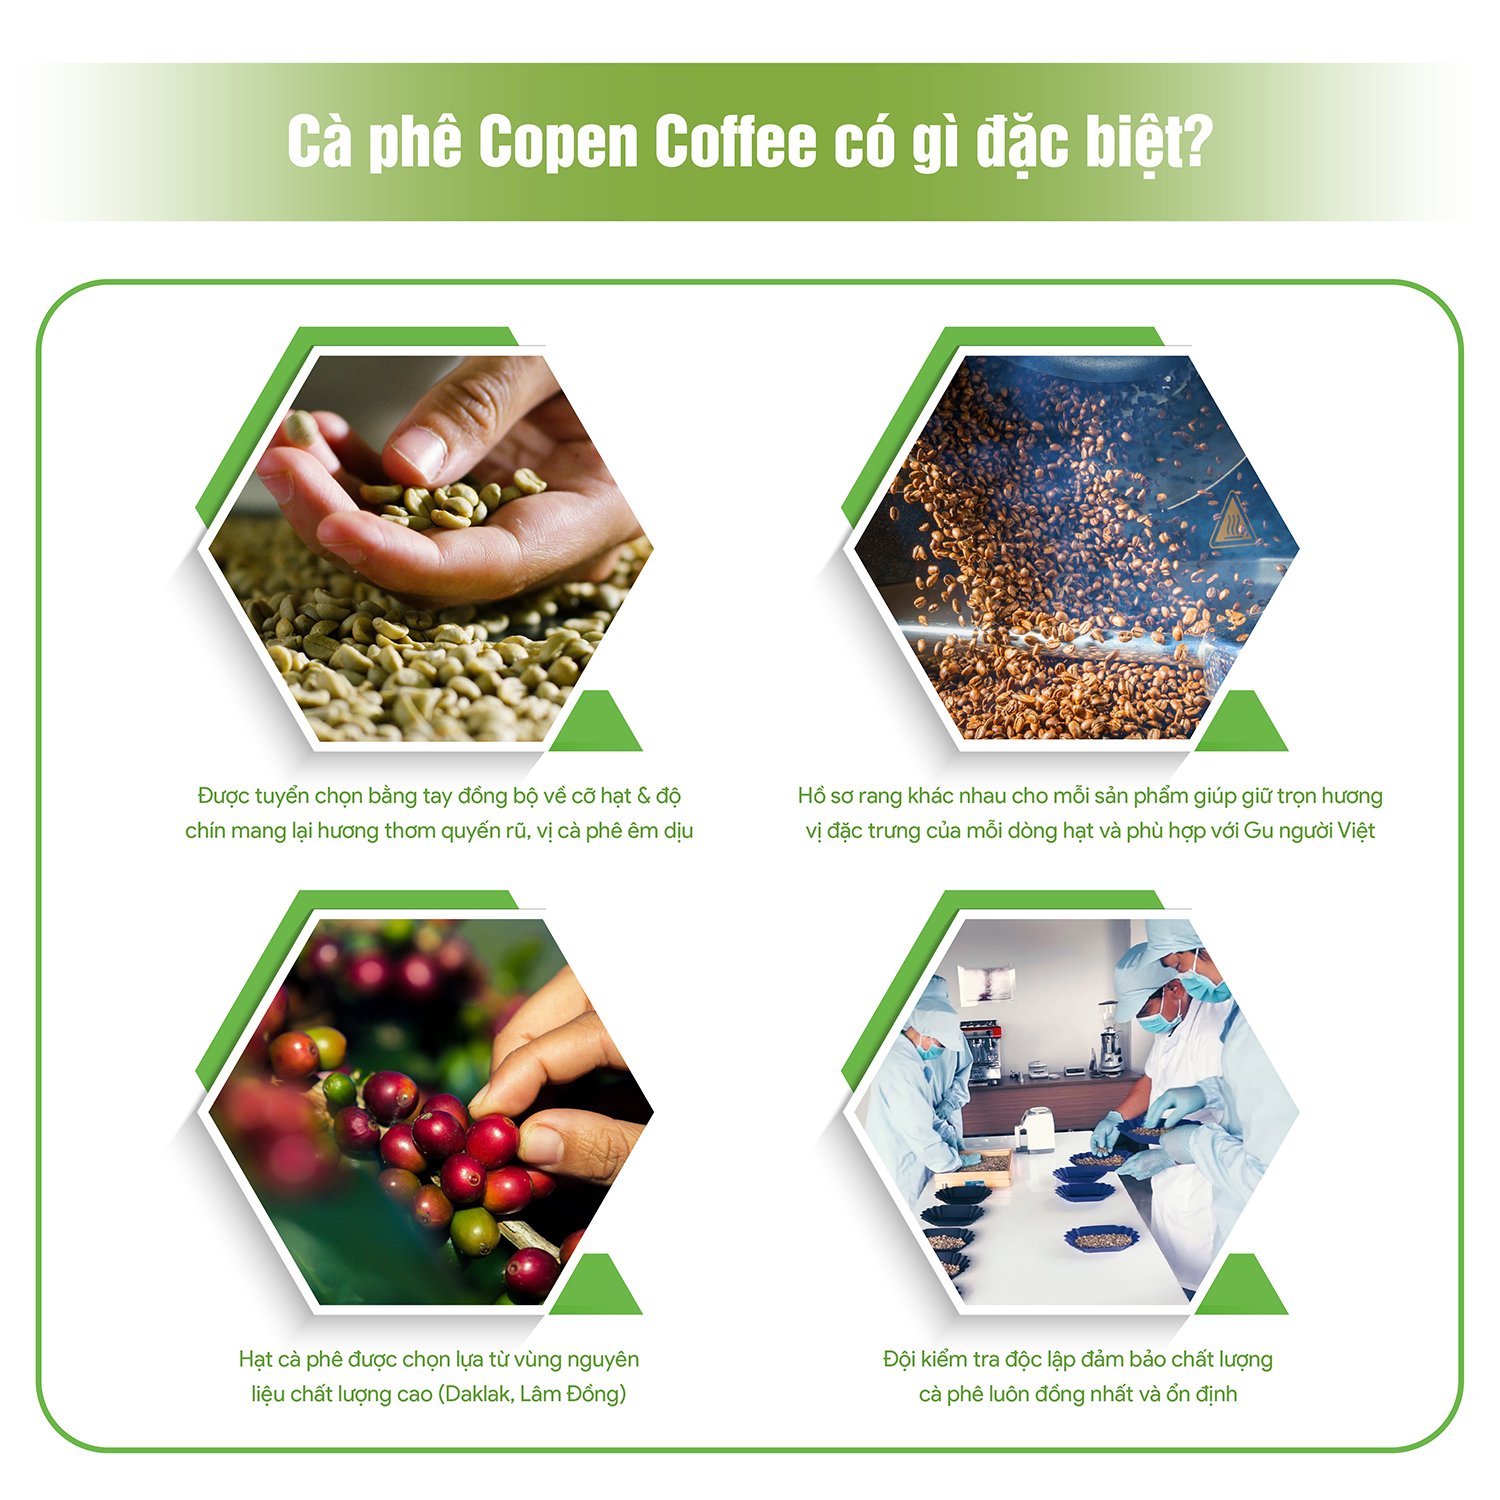 Cà phê hạt Copen coffee Moka 1kg (Hạt Rang Mộc)